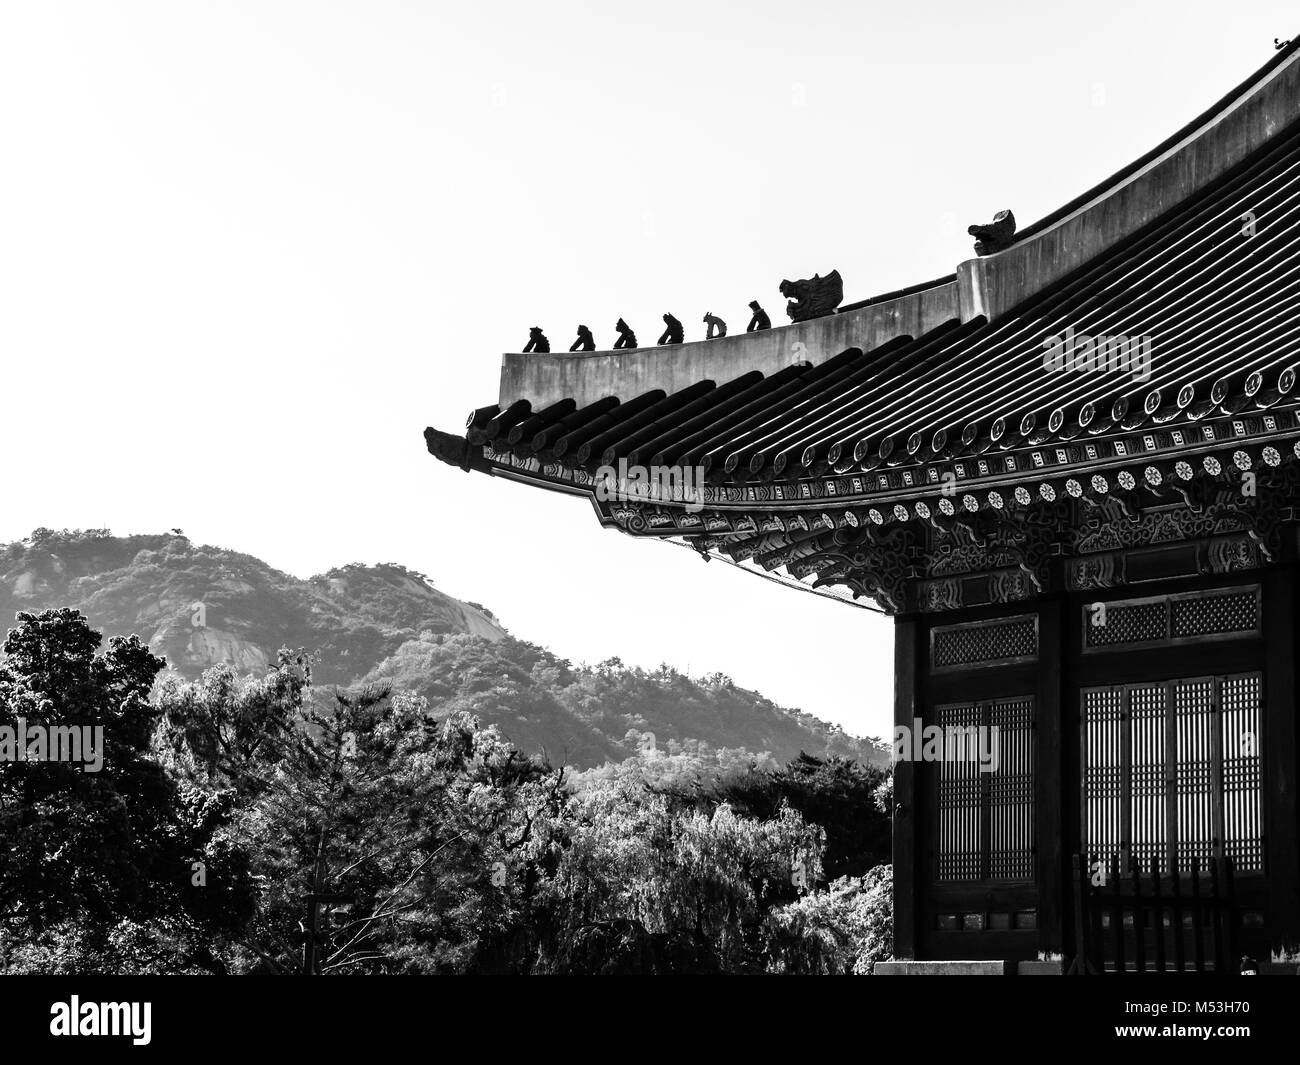 Toit traditionnel coréen. Image en noir et blanc. Gyeongbokgung Palace. Séoul, Corée du Sud Banque D'Images